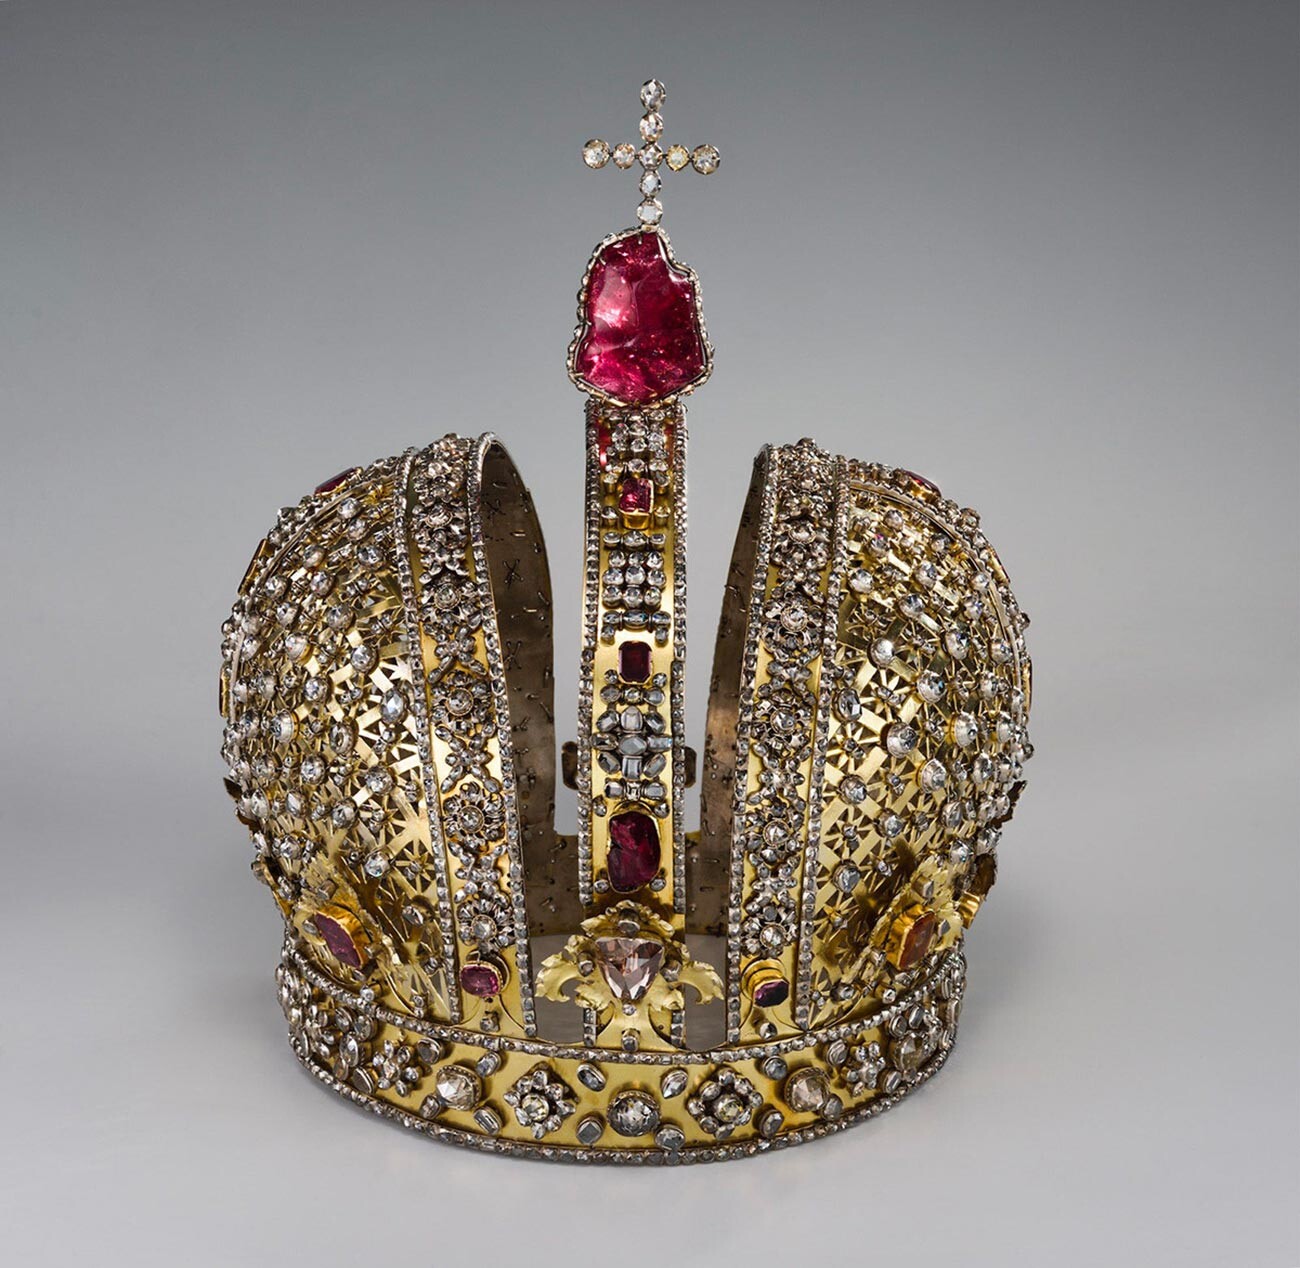 Corona de Ana de Rusia de la colección de los Museos del Kremlin de Moscú

